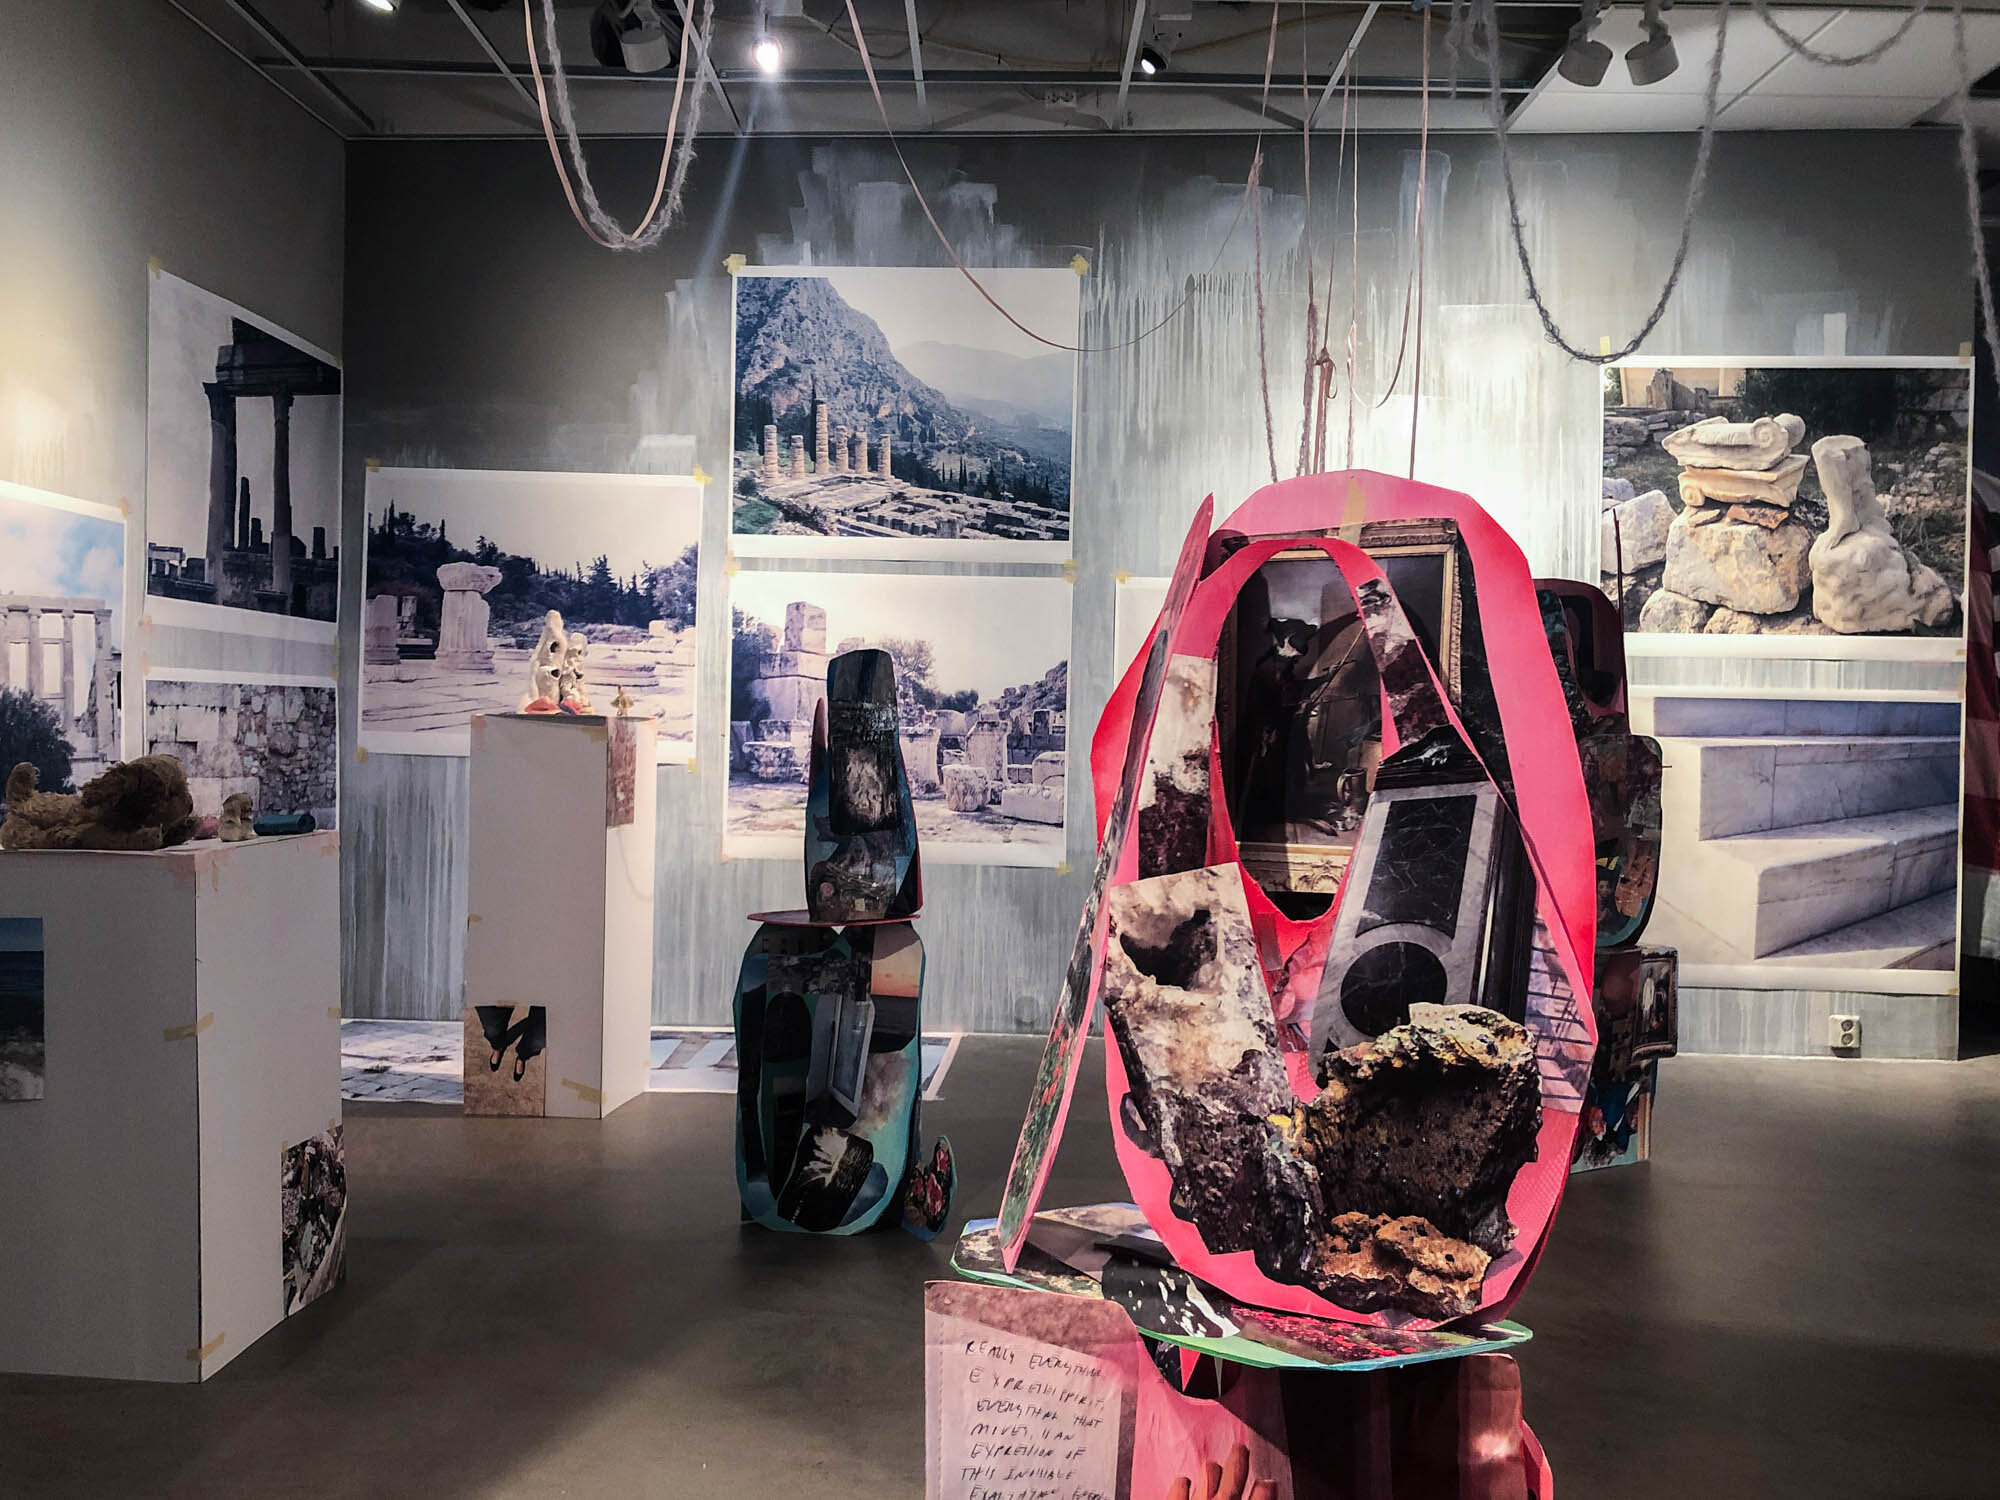  – – – – – – – – – – (2019) Installasjon med funne objekter av Tricia Middleton. Foto: Hilde Sørstrøm 